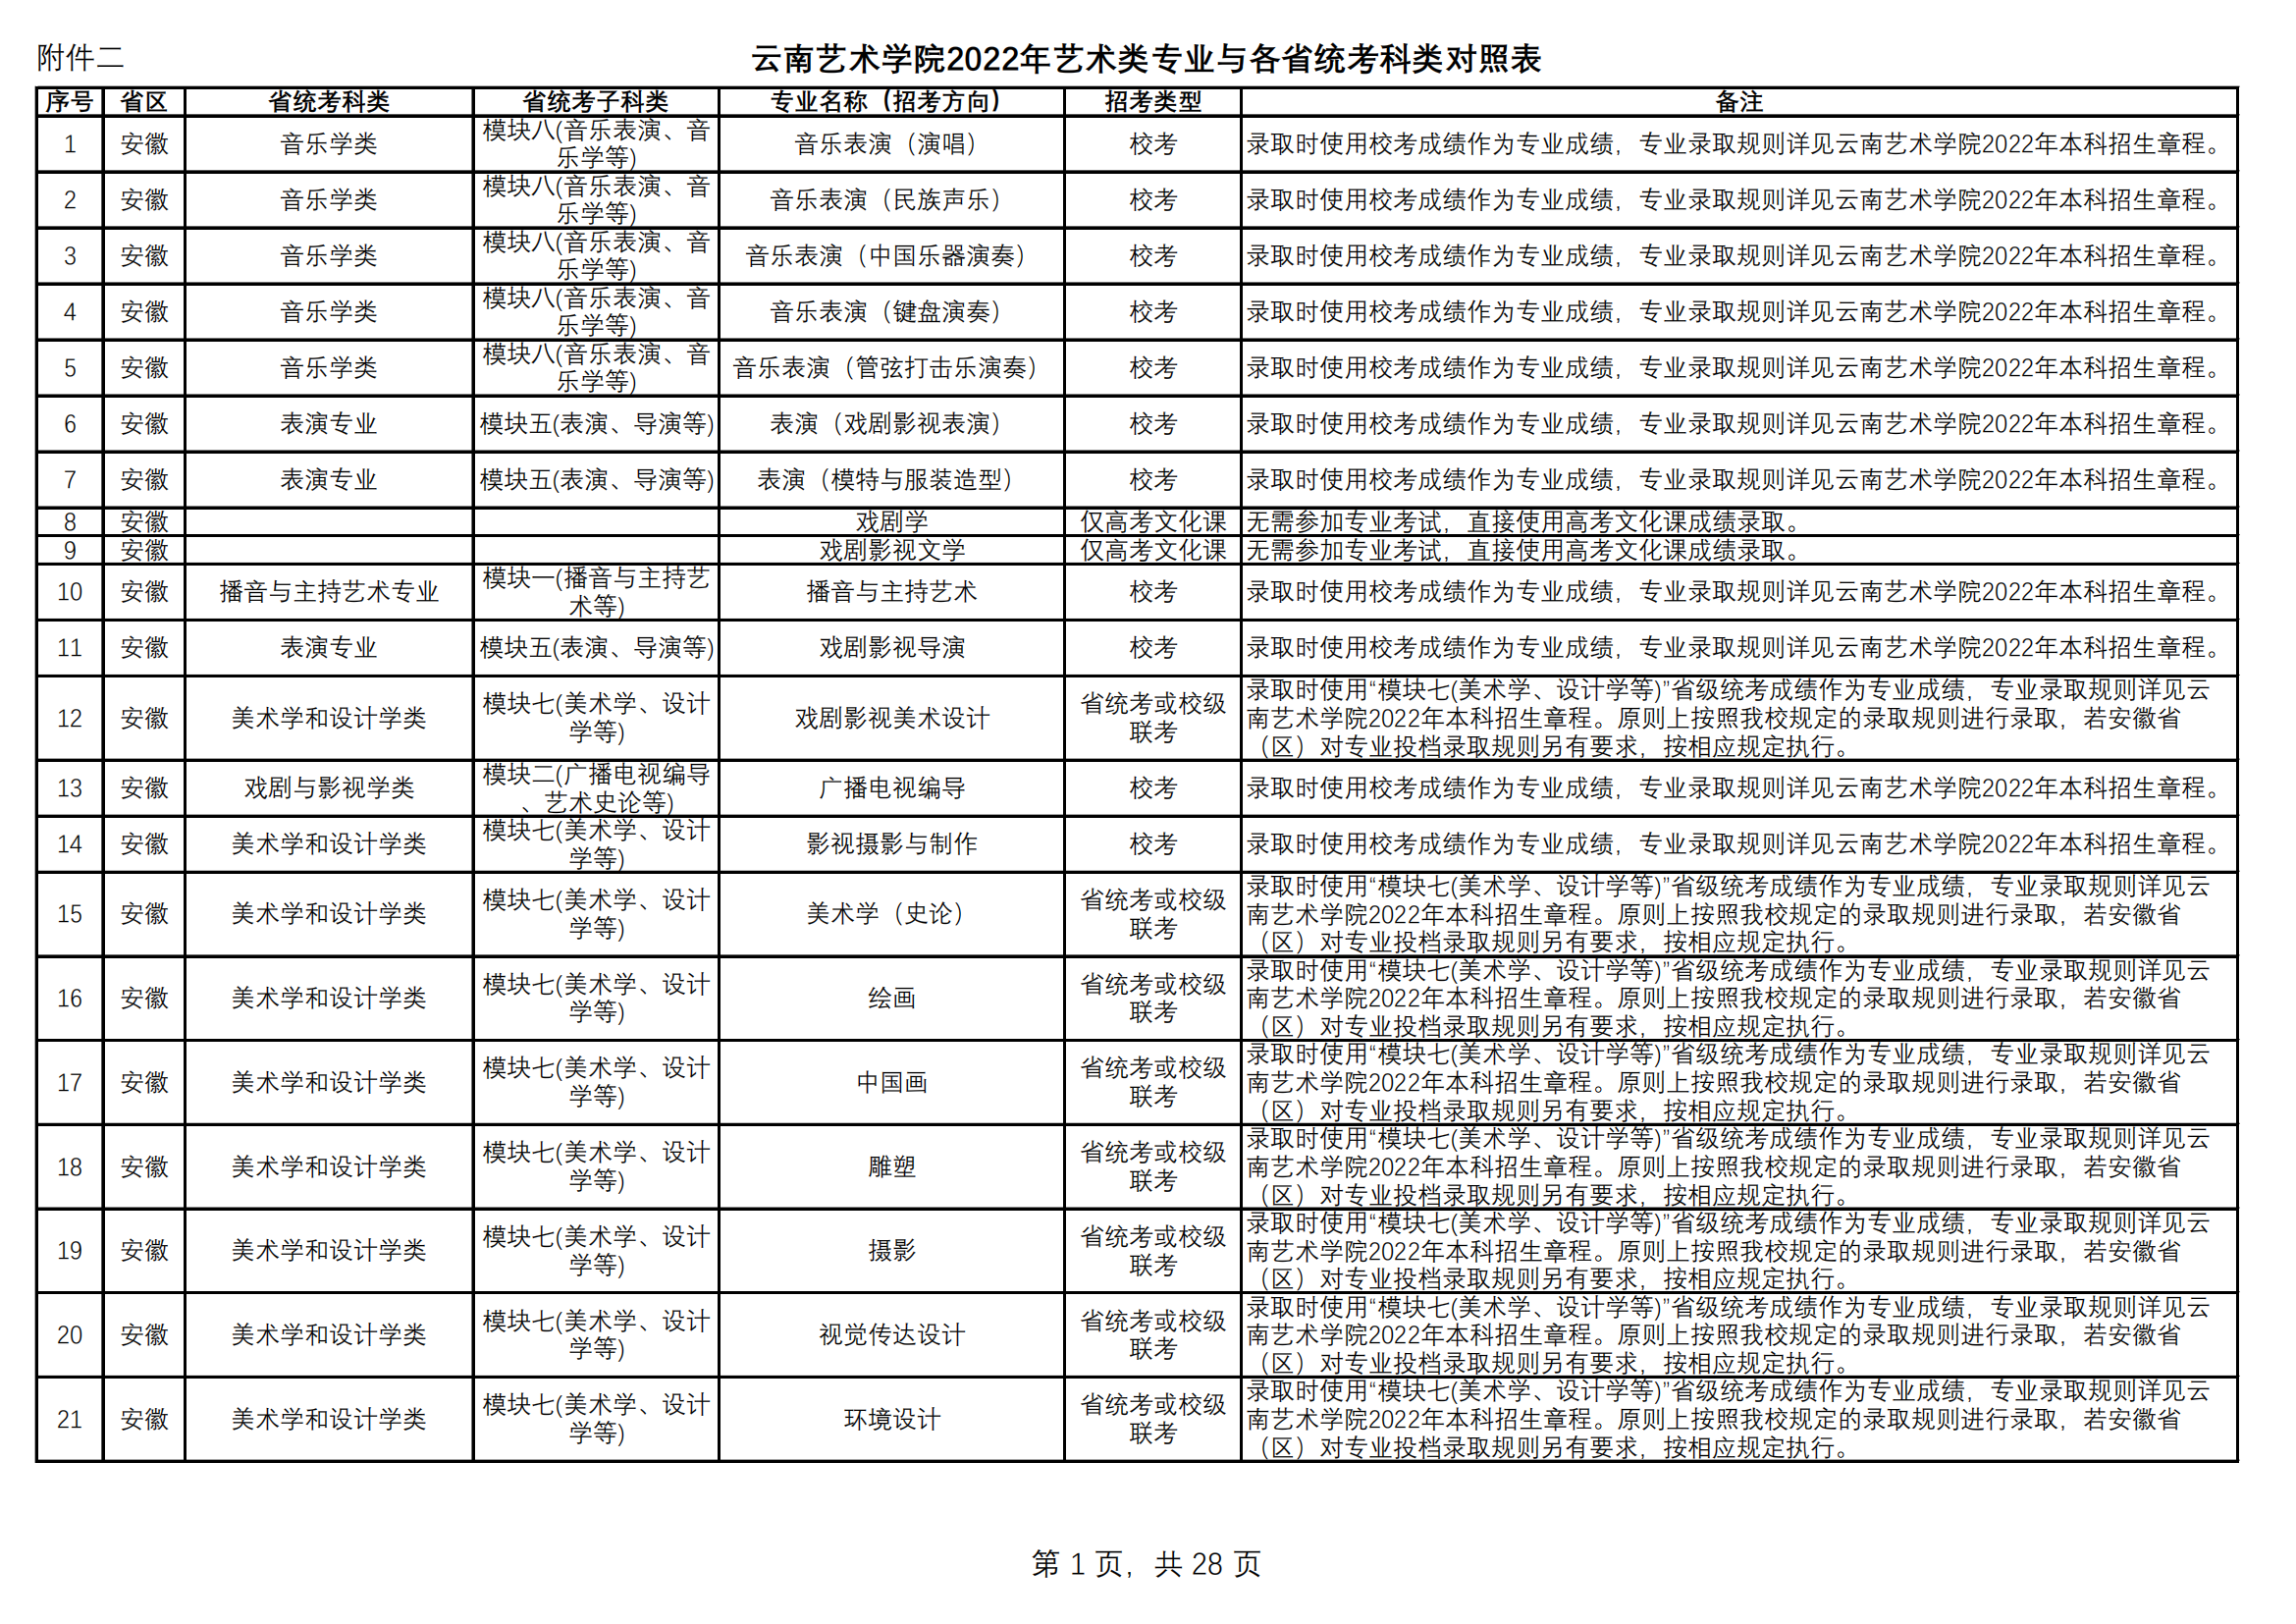 附件2.云南艺术学院2022年艺术类专业与各省统考科类对照表（定稿）_00.png